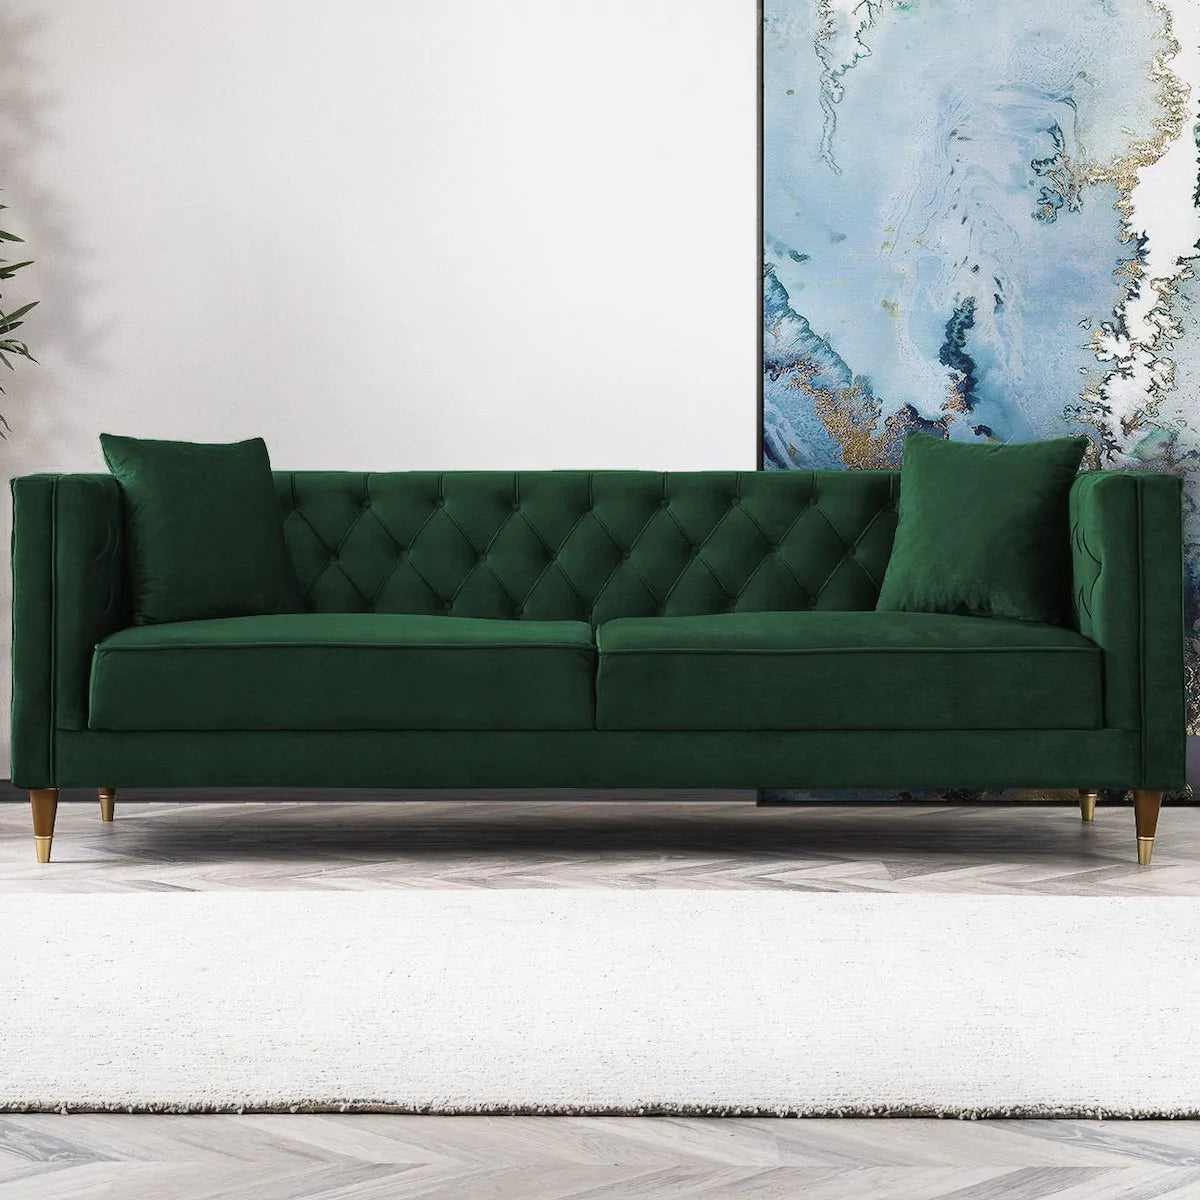 Mid-Century Modern Tufted Rectangular Tight Back Sofa in Emerald Green Velvet